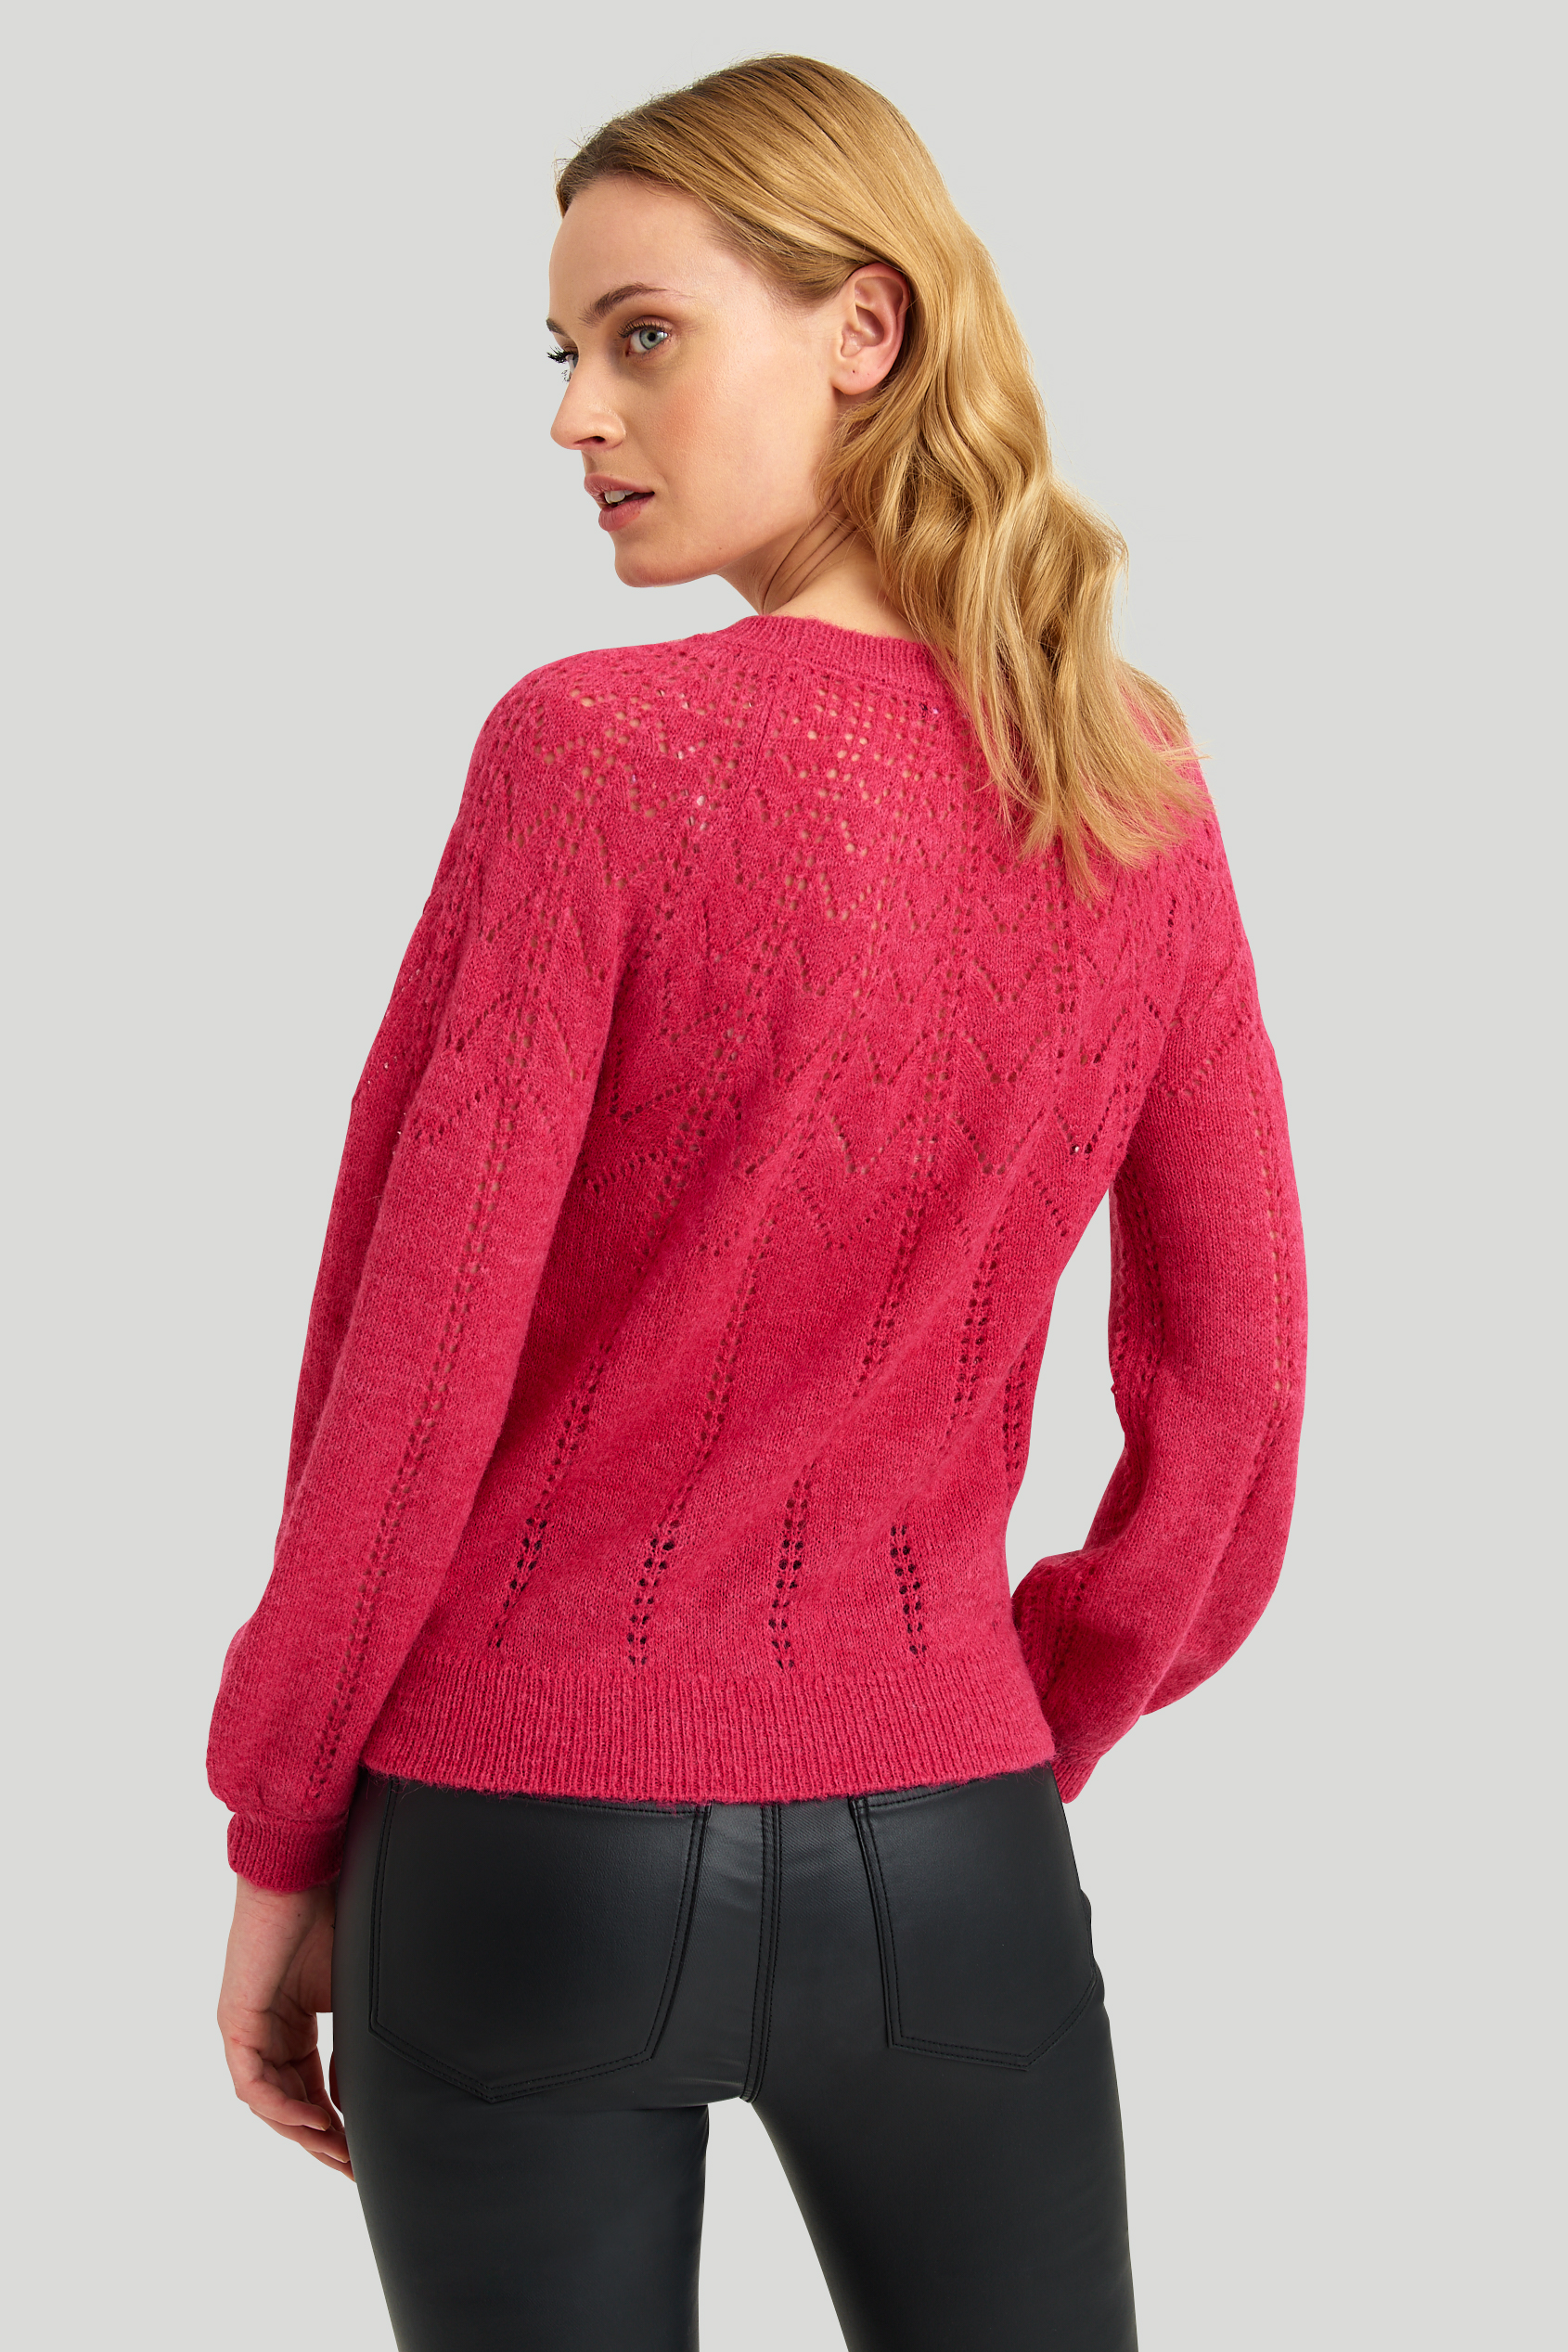 Miękki, ażurowy sweter w różowym kolorze